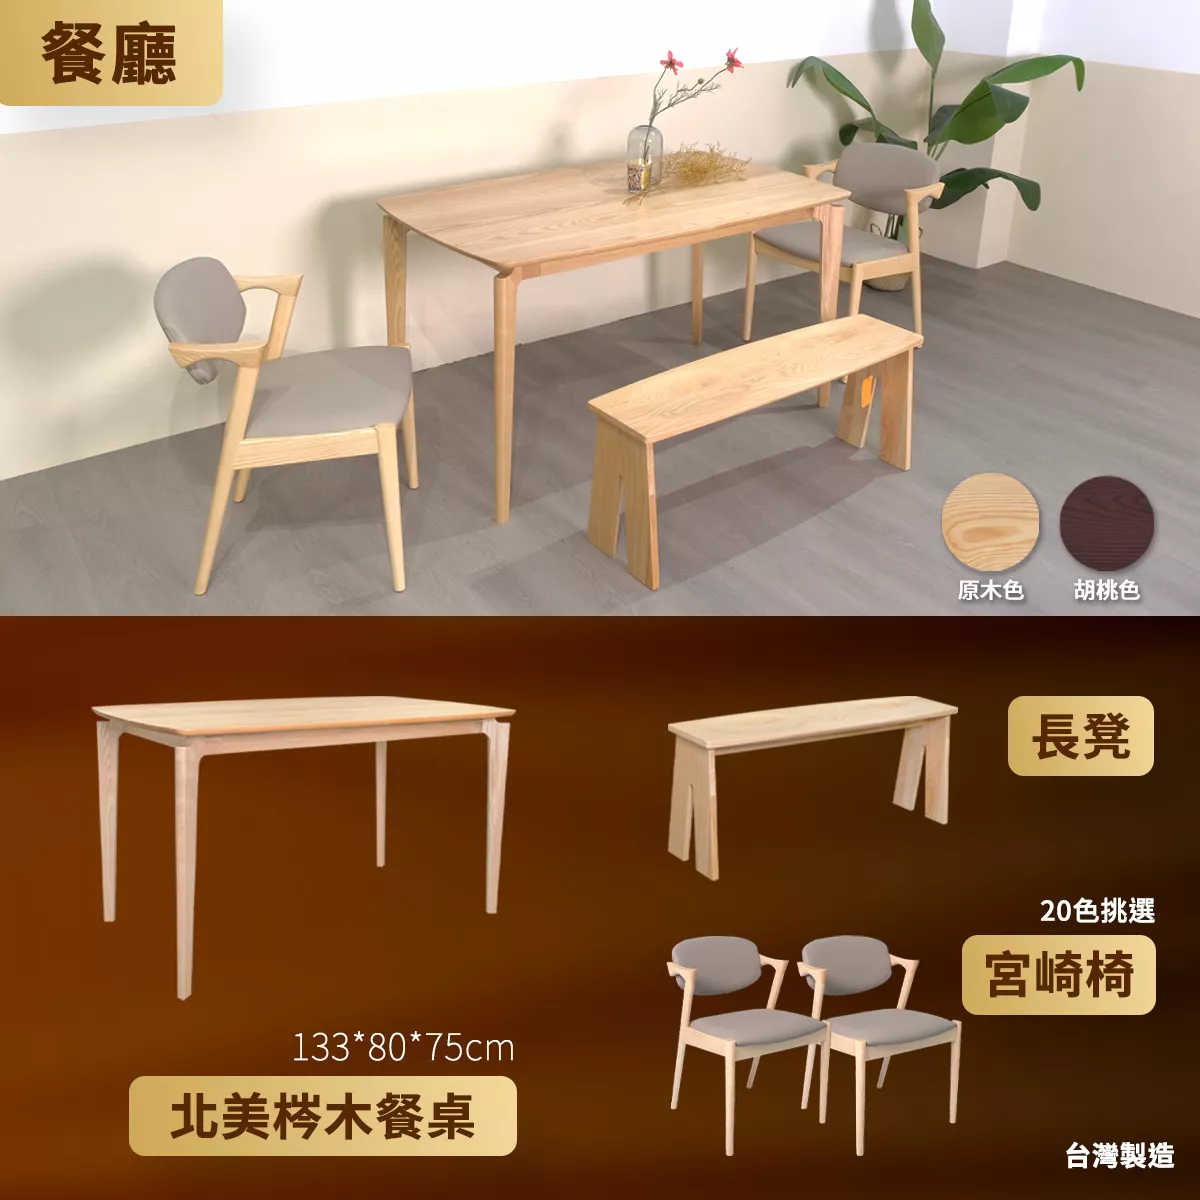 餐廳餐桌、餐椅與椅凳優惠特價款式